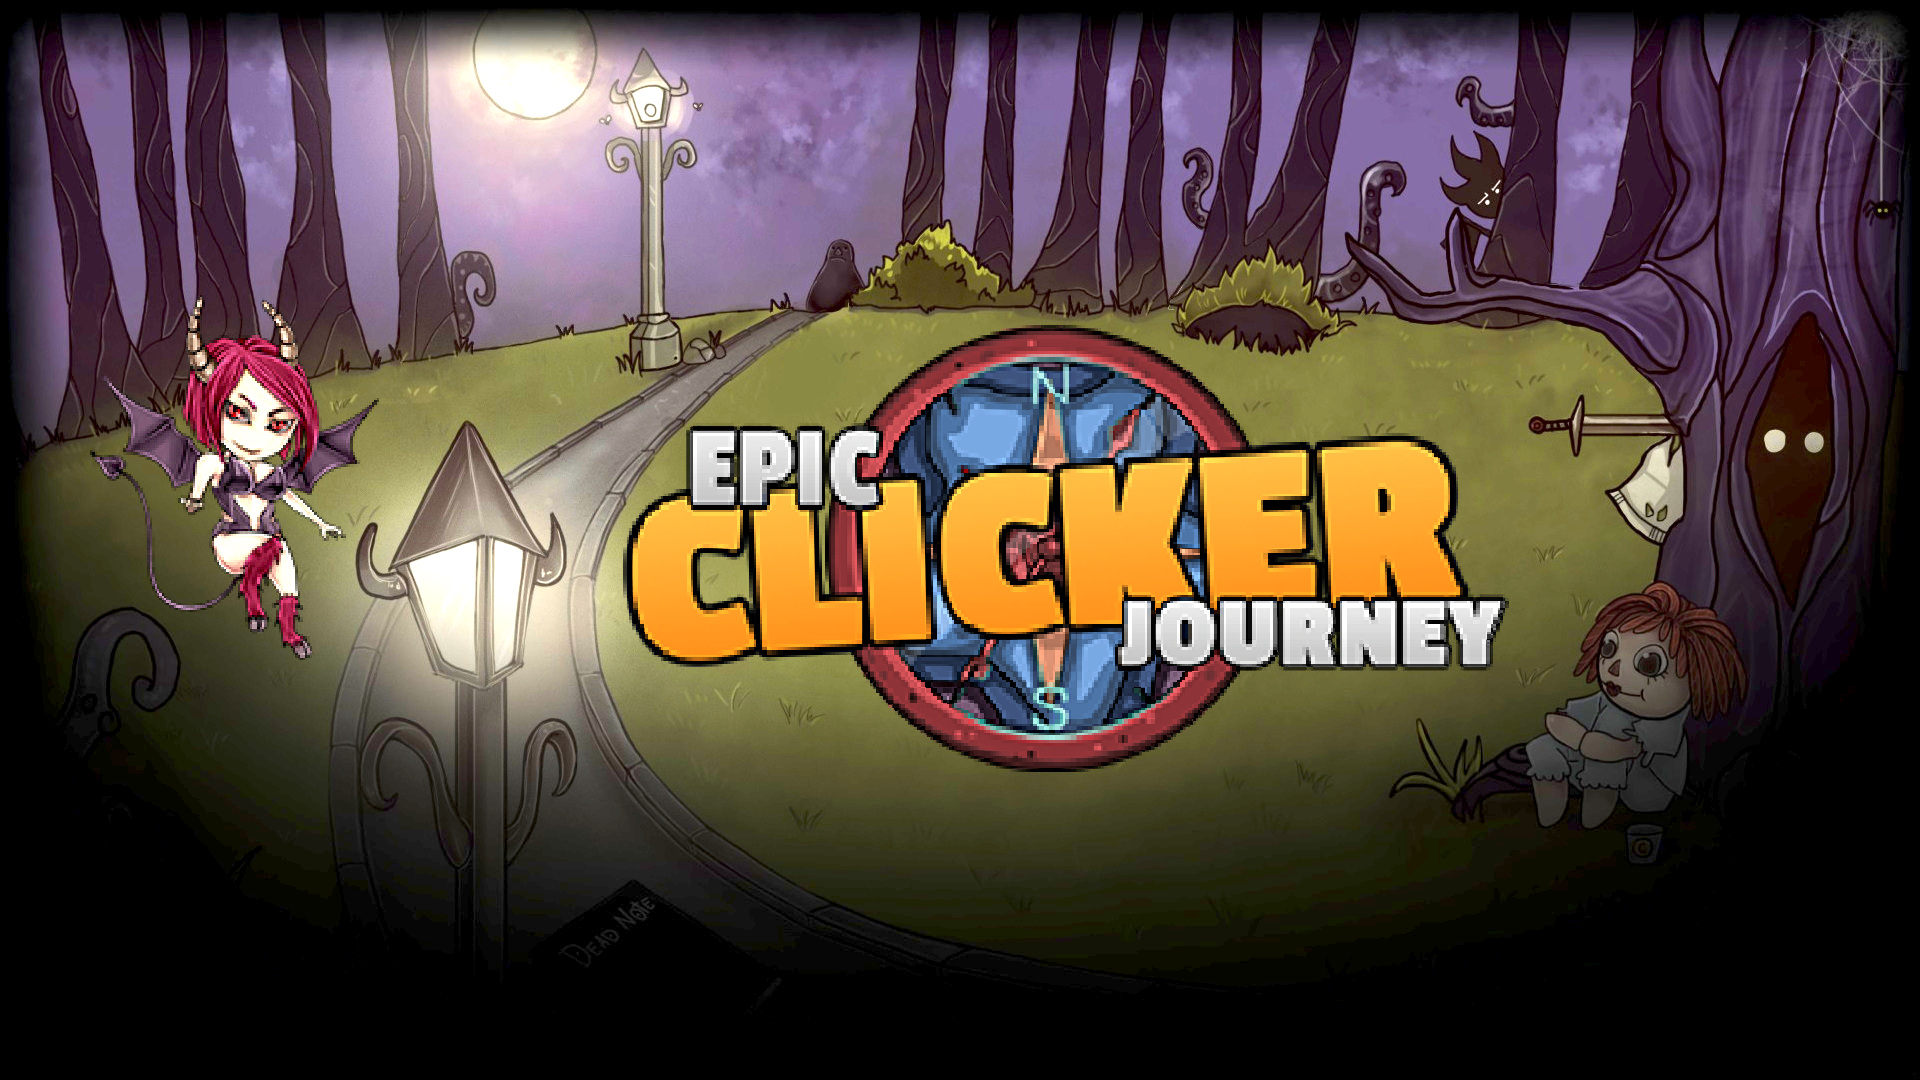 Epic journey. Игра путешествие кликер. Epic Clicker. Epic Clicker Journey скрины. Journey Switch.